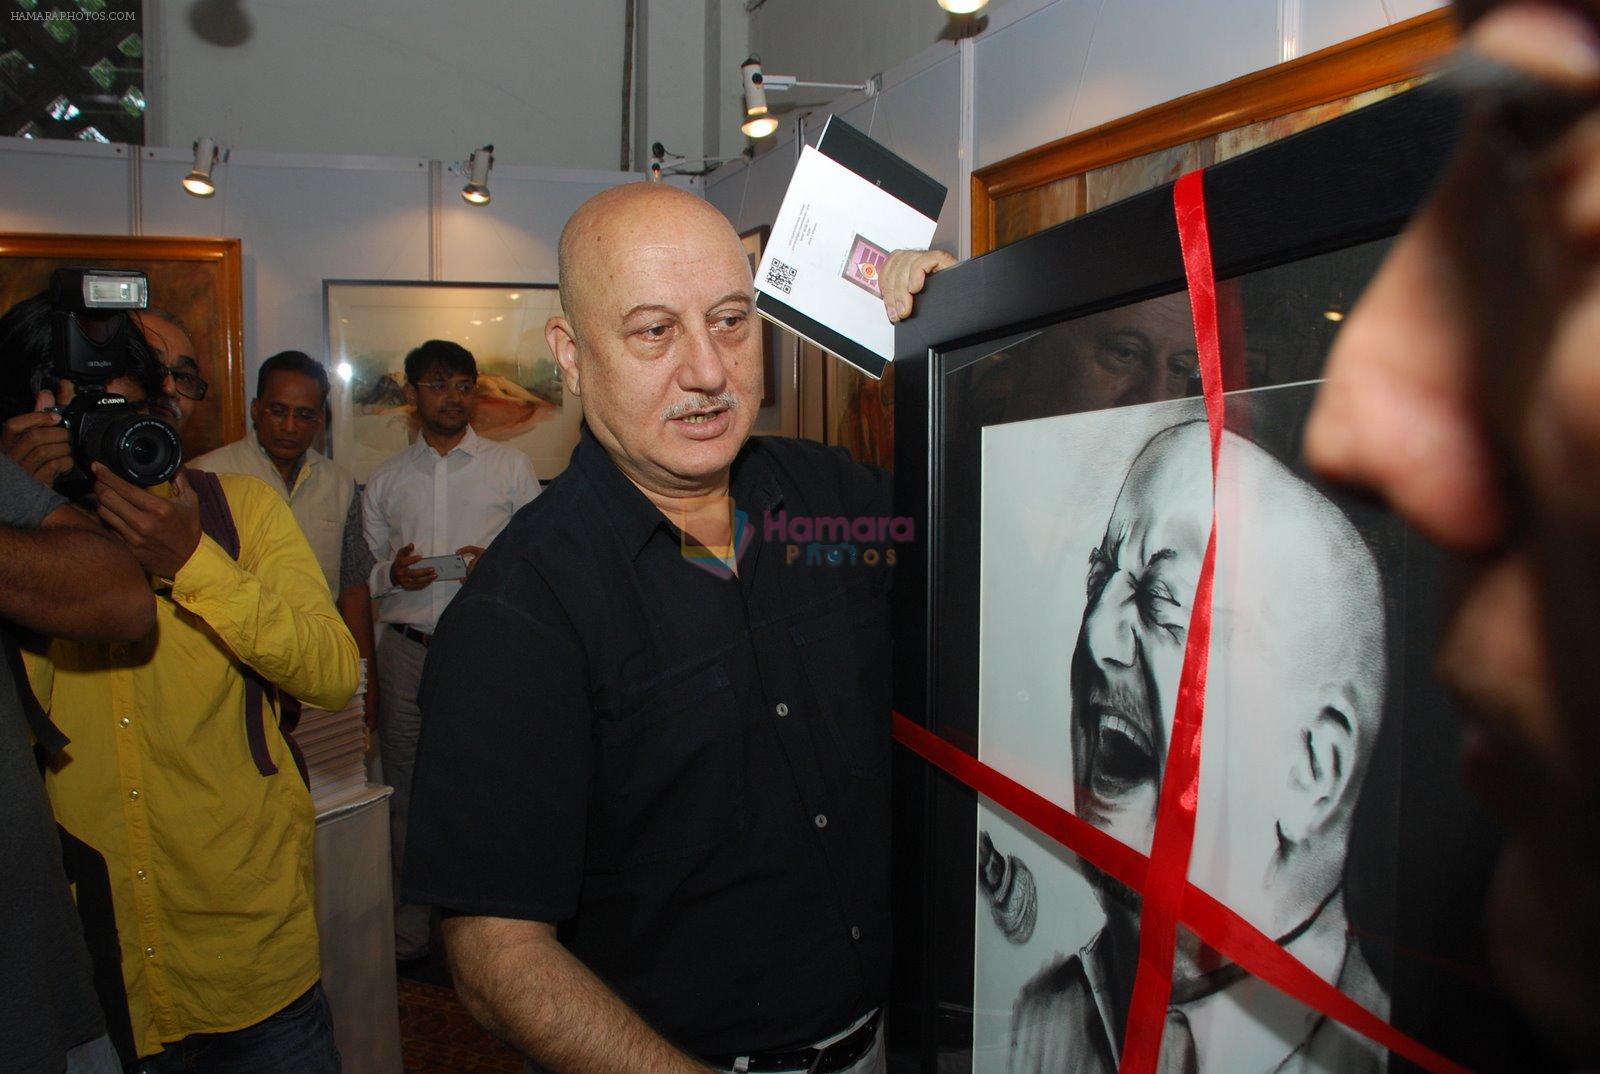 Anupam Kher inaugurates India Art fest in Nehru Centre on 27th Nov 2014